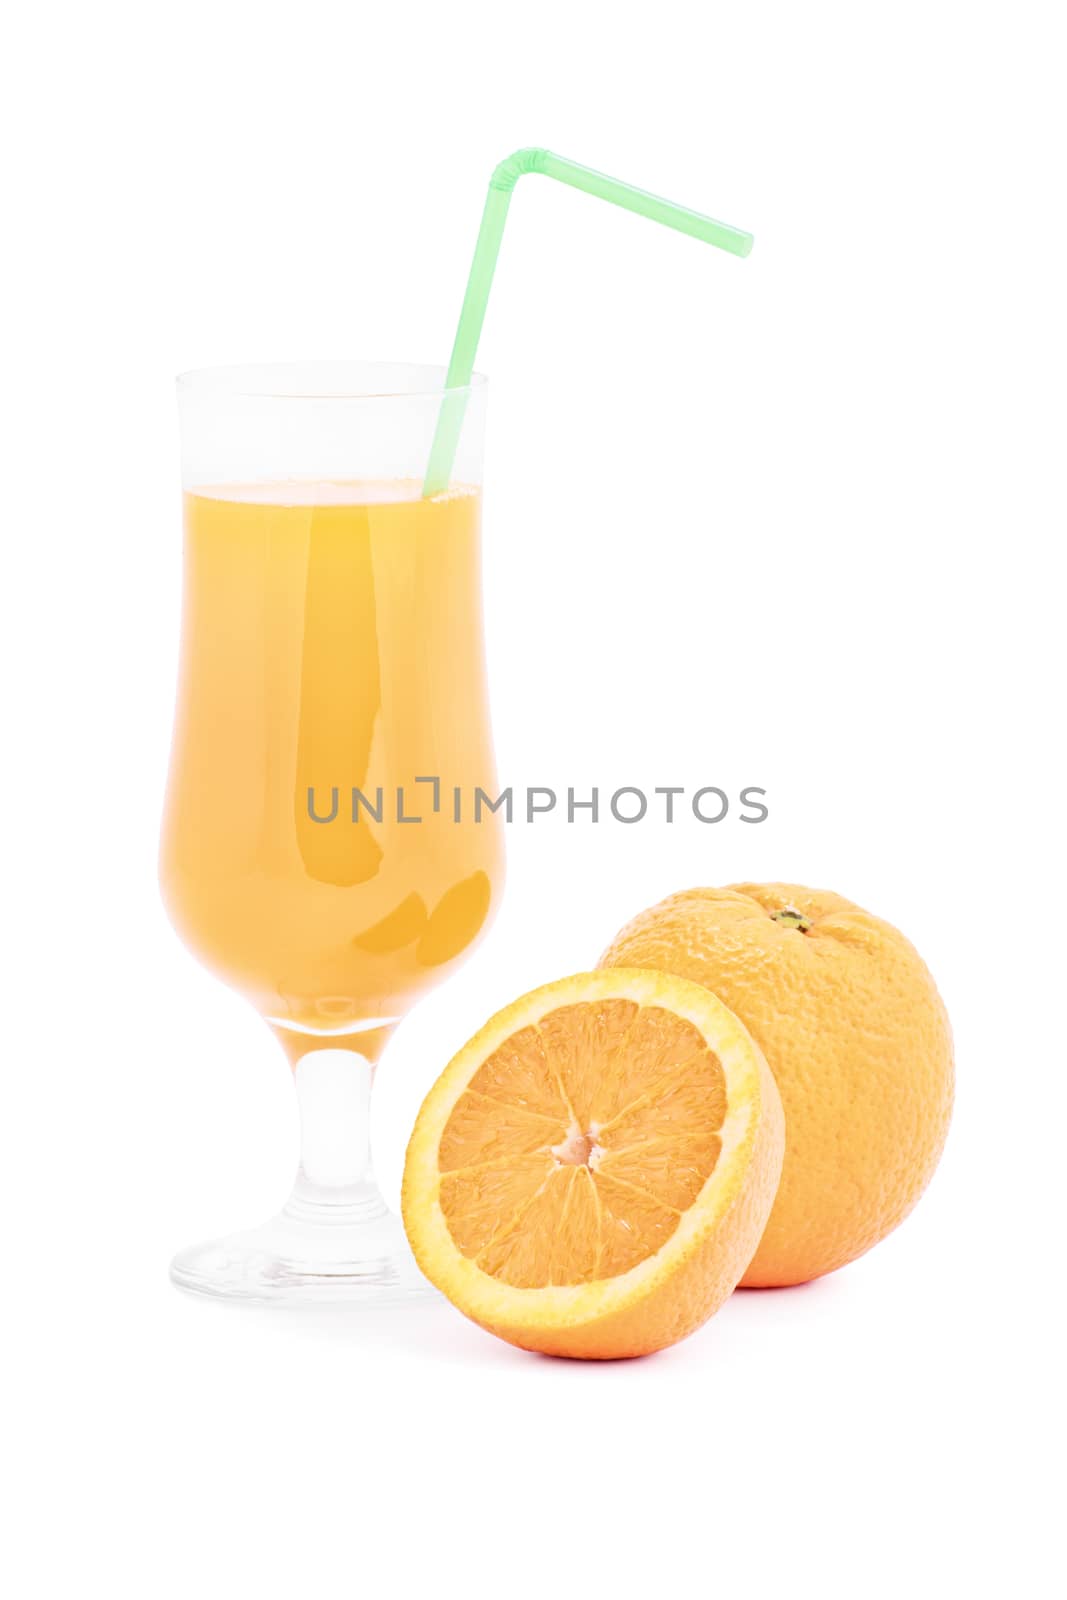 Ripe orange with glass of orange juice, isolated on white background.